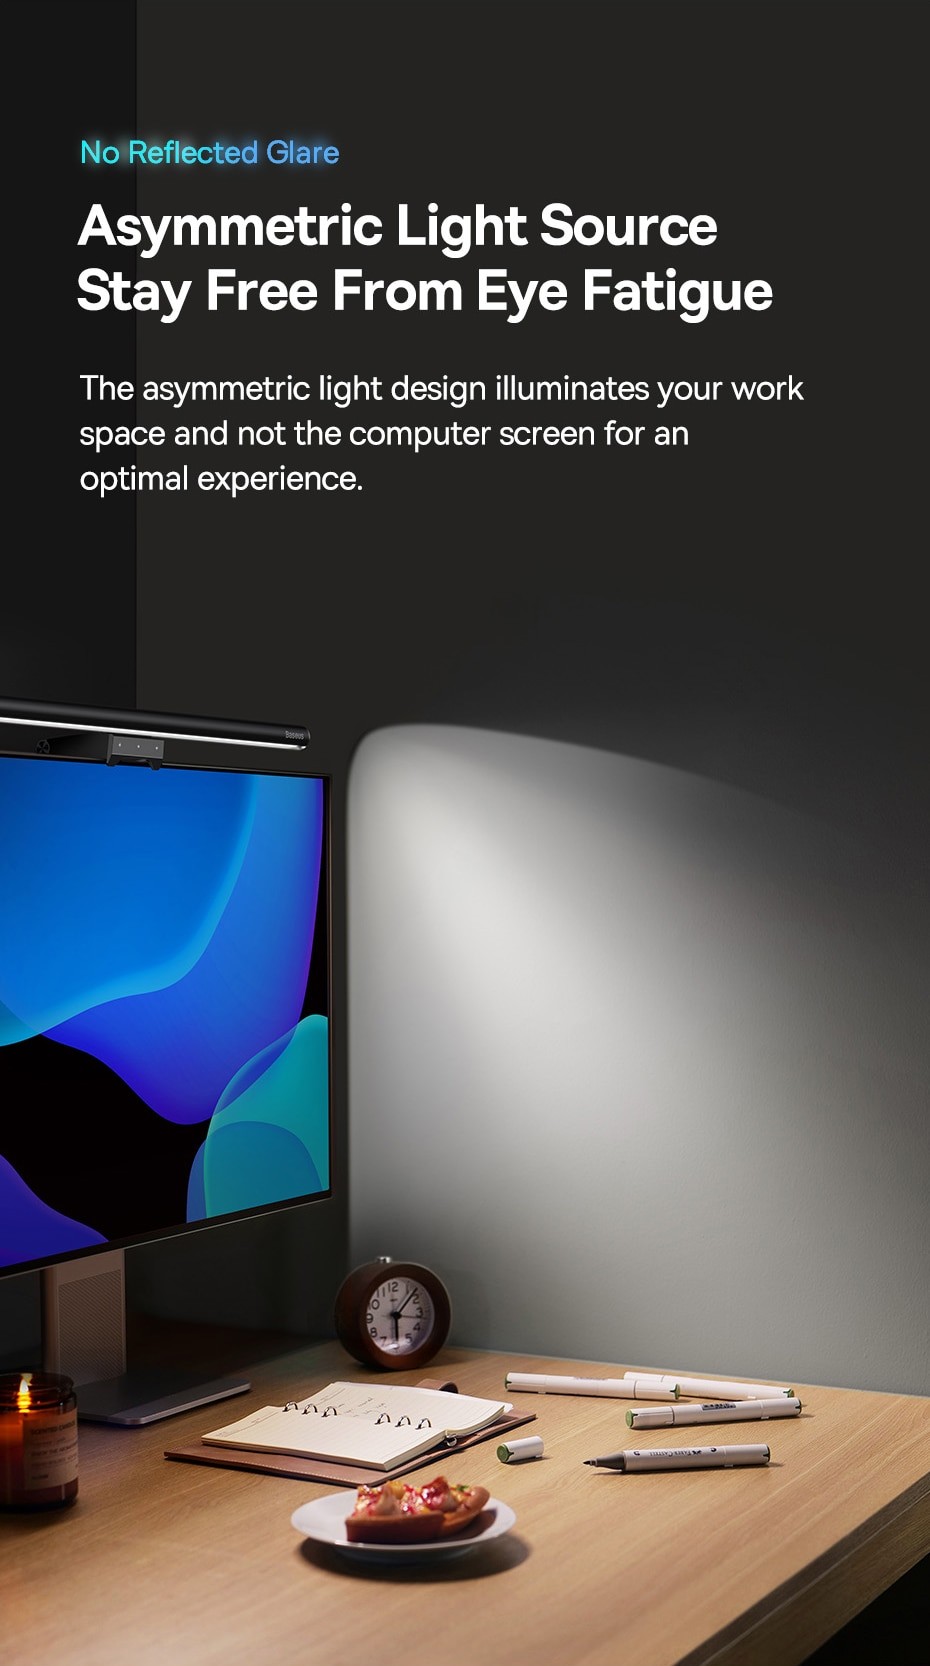 Lampe USB Pour écran D'ordinateur, Nouveau Design, Idéal Pour